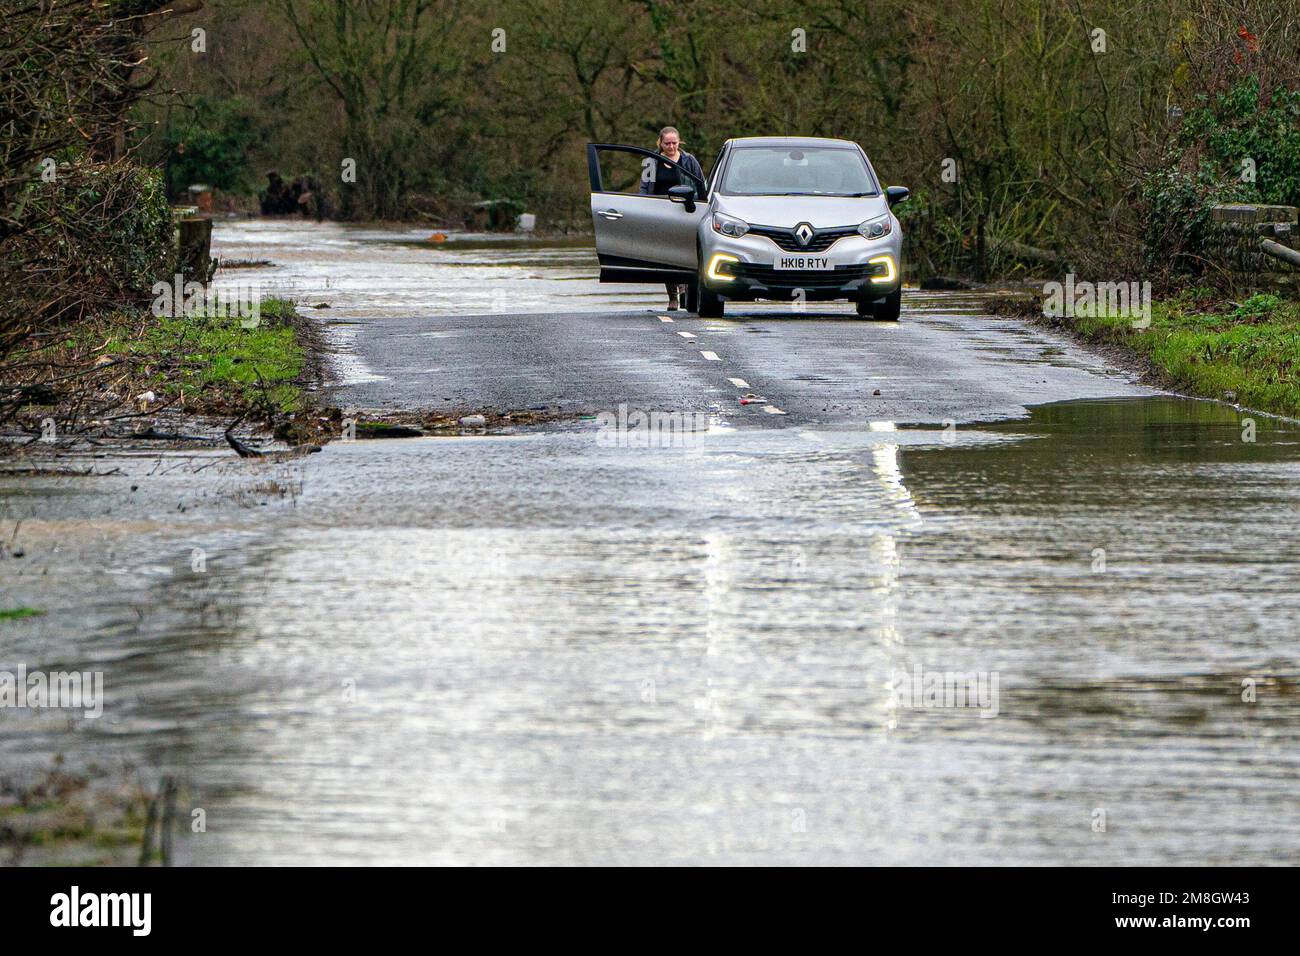 Un conductor se detiene para revisar el vehículo después de conducir a través de las inundaciones en Apperley, Gloucestershire, donde el río Severn estalló en sus orillas y ha inundado campos y carreteras en todo el condado. Las fuertes lluvias y los vientos azules en gran parte del Reino Unido este fin de semana serán seguidos por un período de clima frío potencialmente severo la próxima semana. Fecha de la foto: Sábado 14 de enero de 2023. Foto de stock